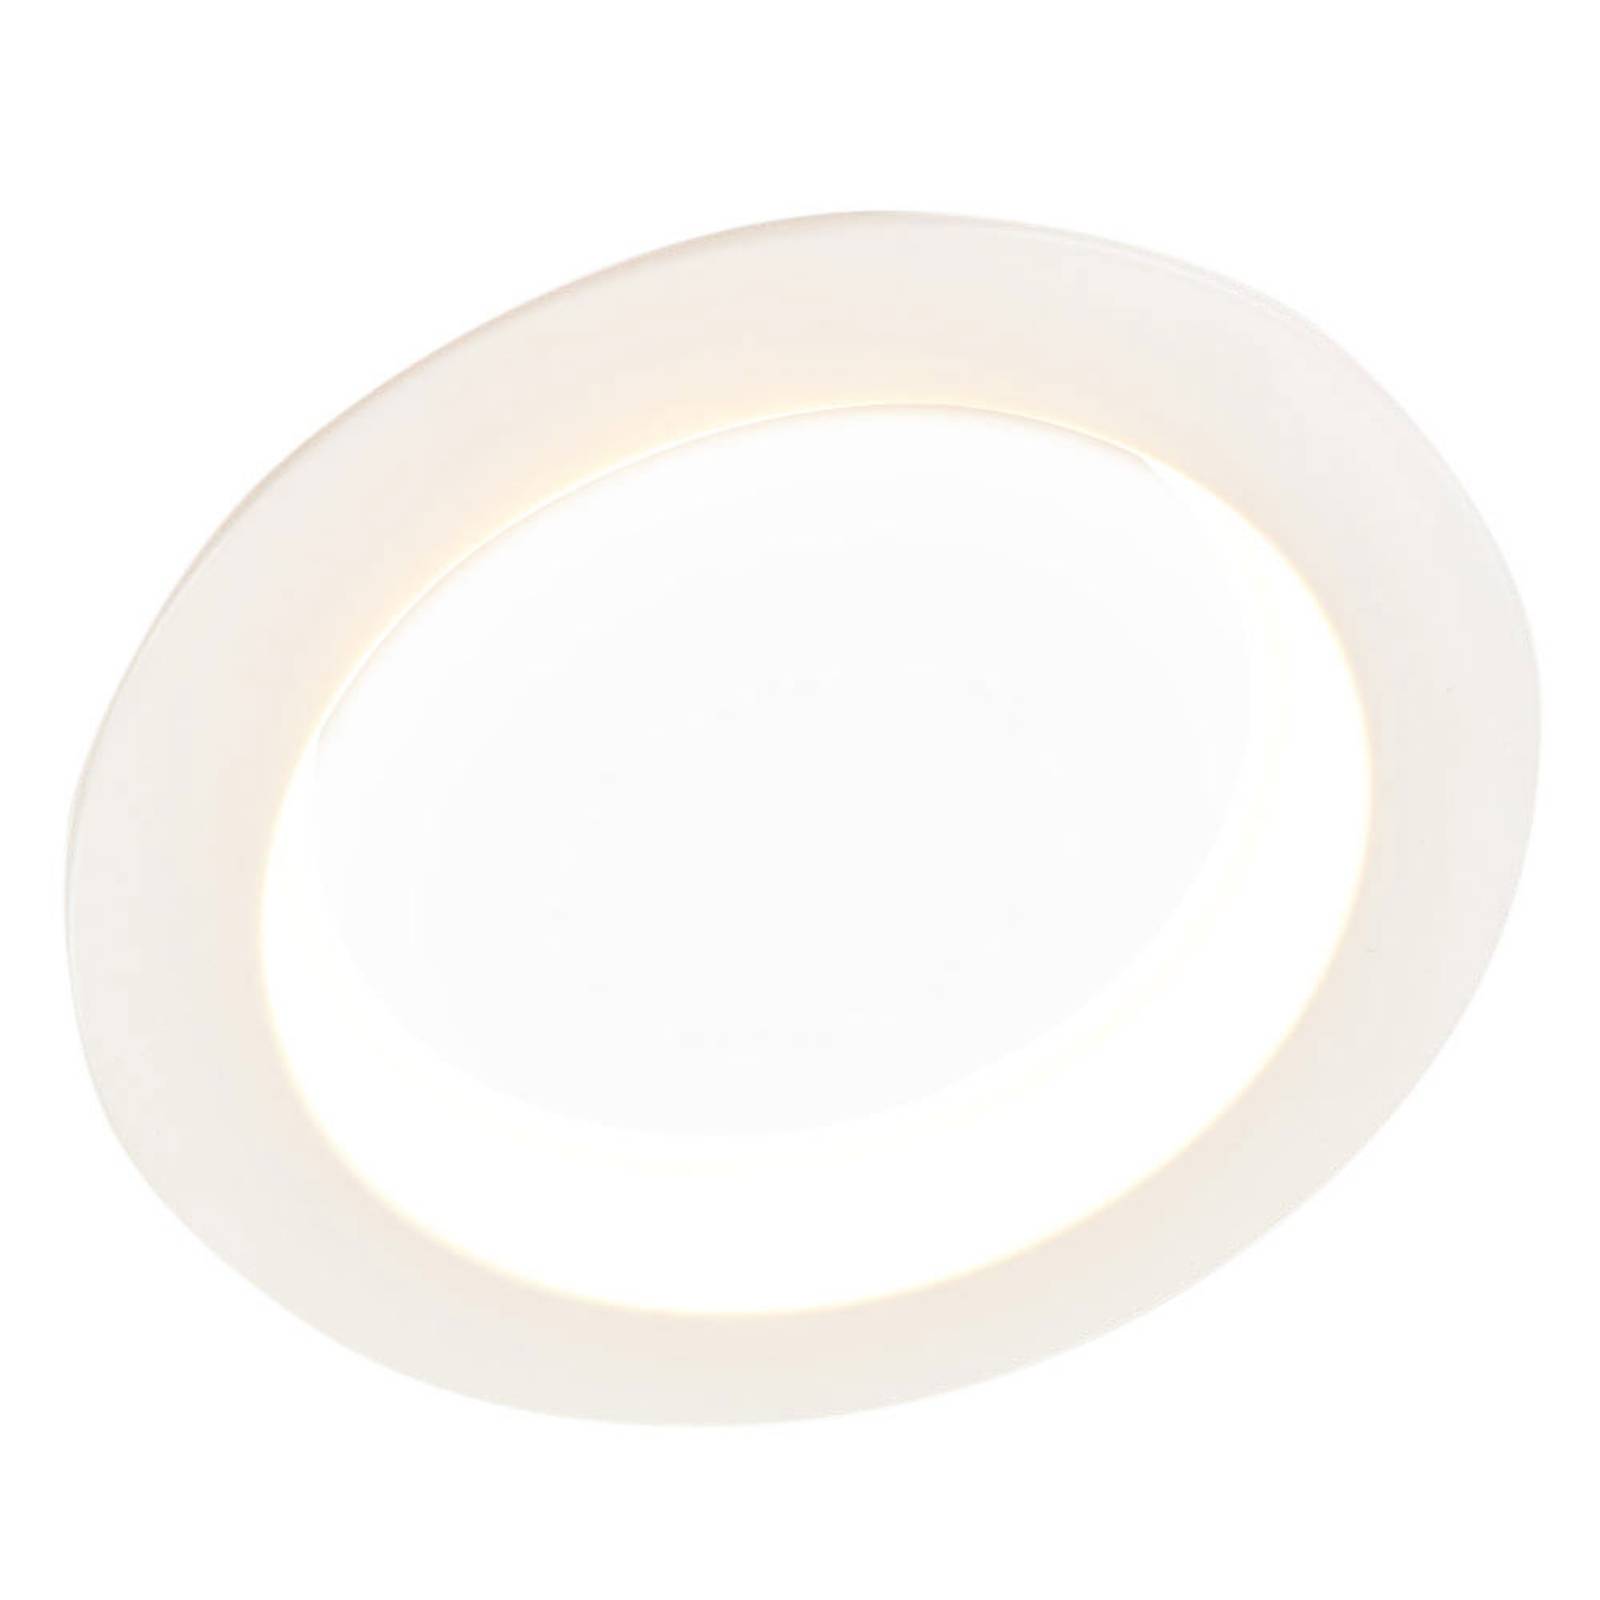 Piet világos LED downlight lámpa, 36 W 3 szín